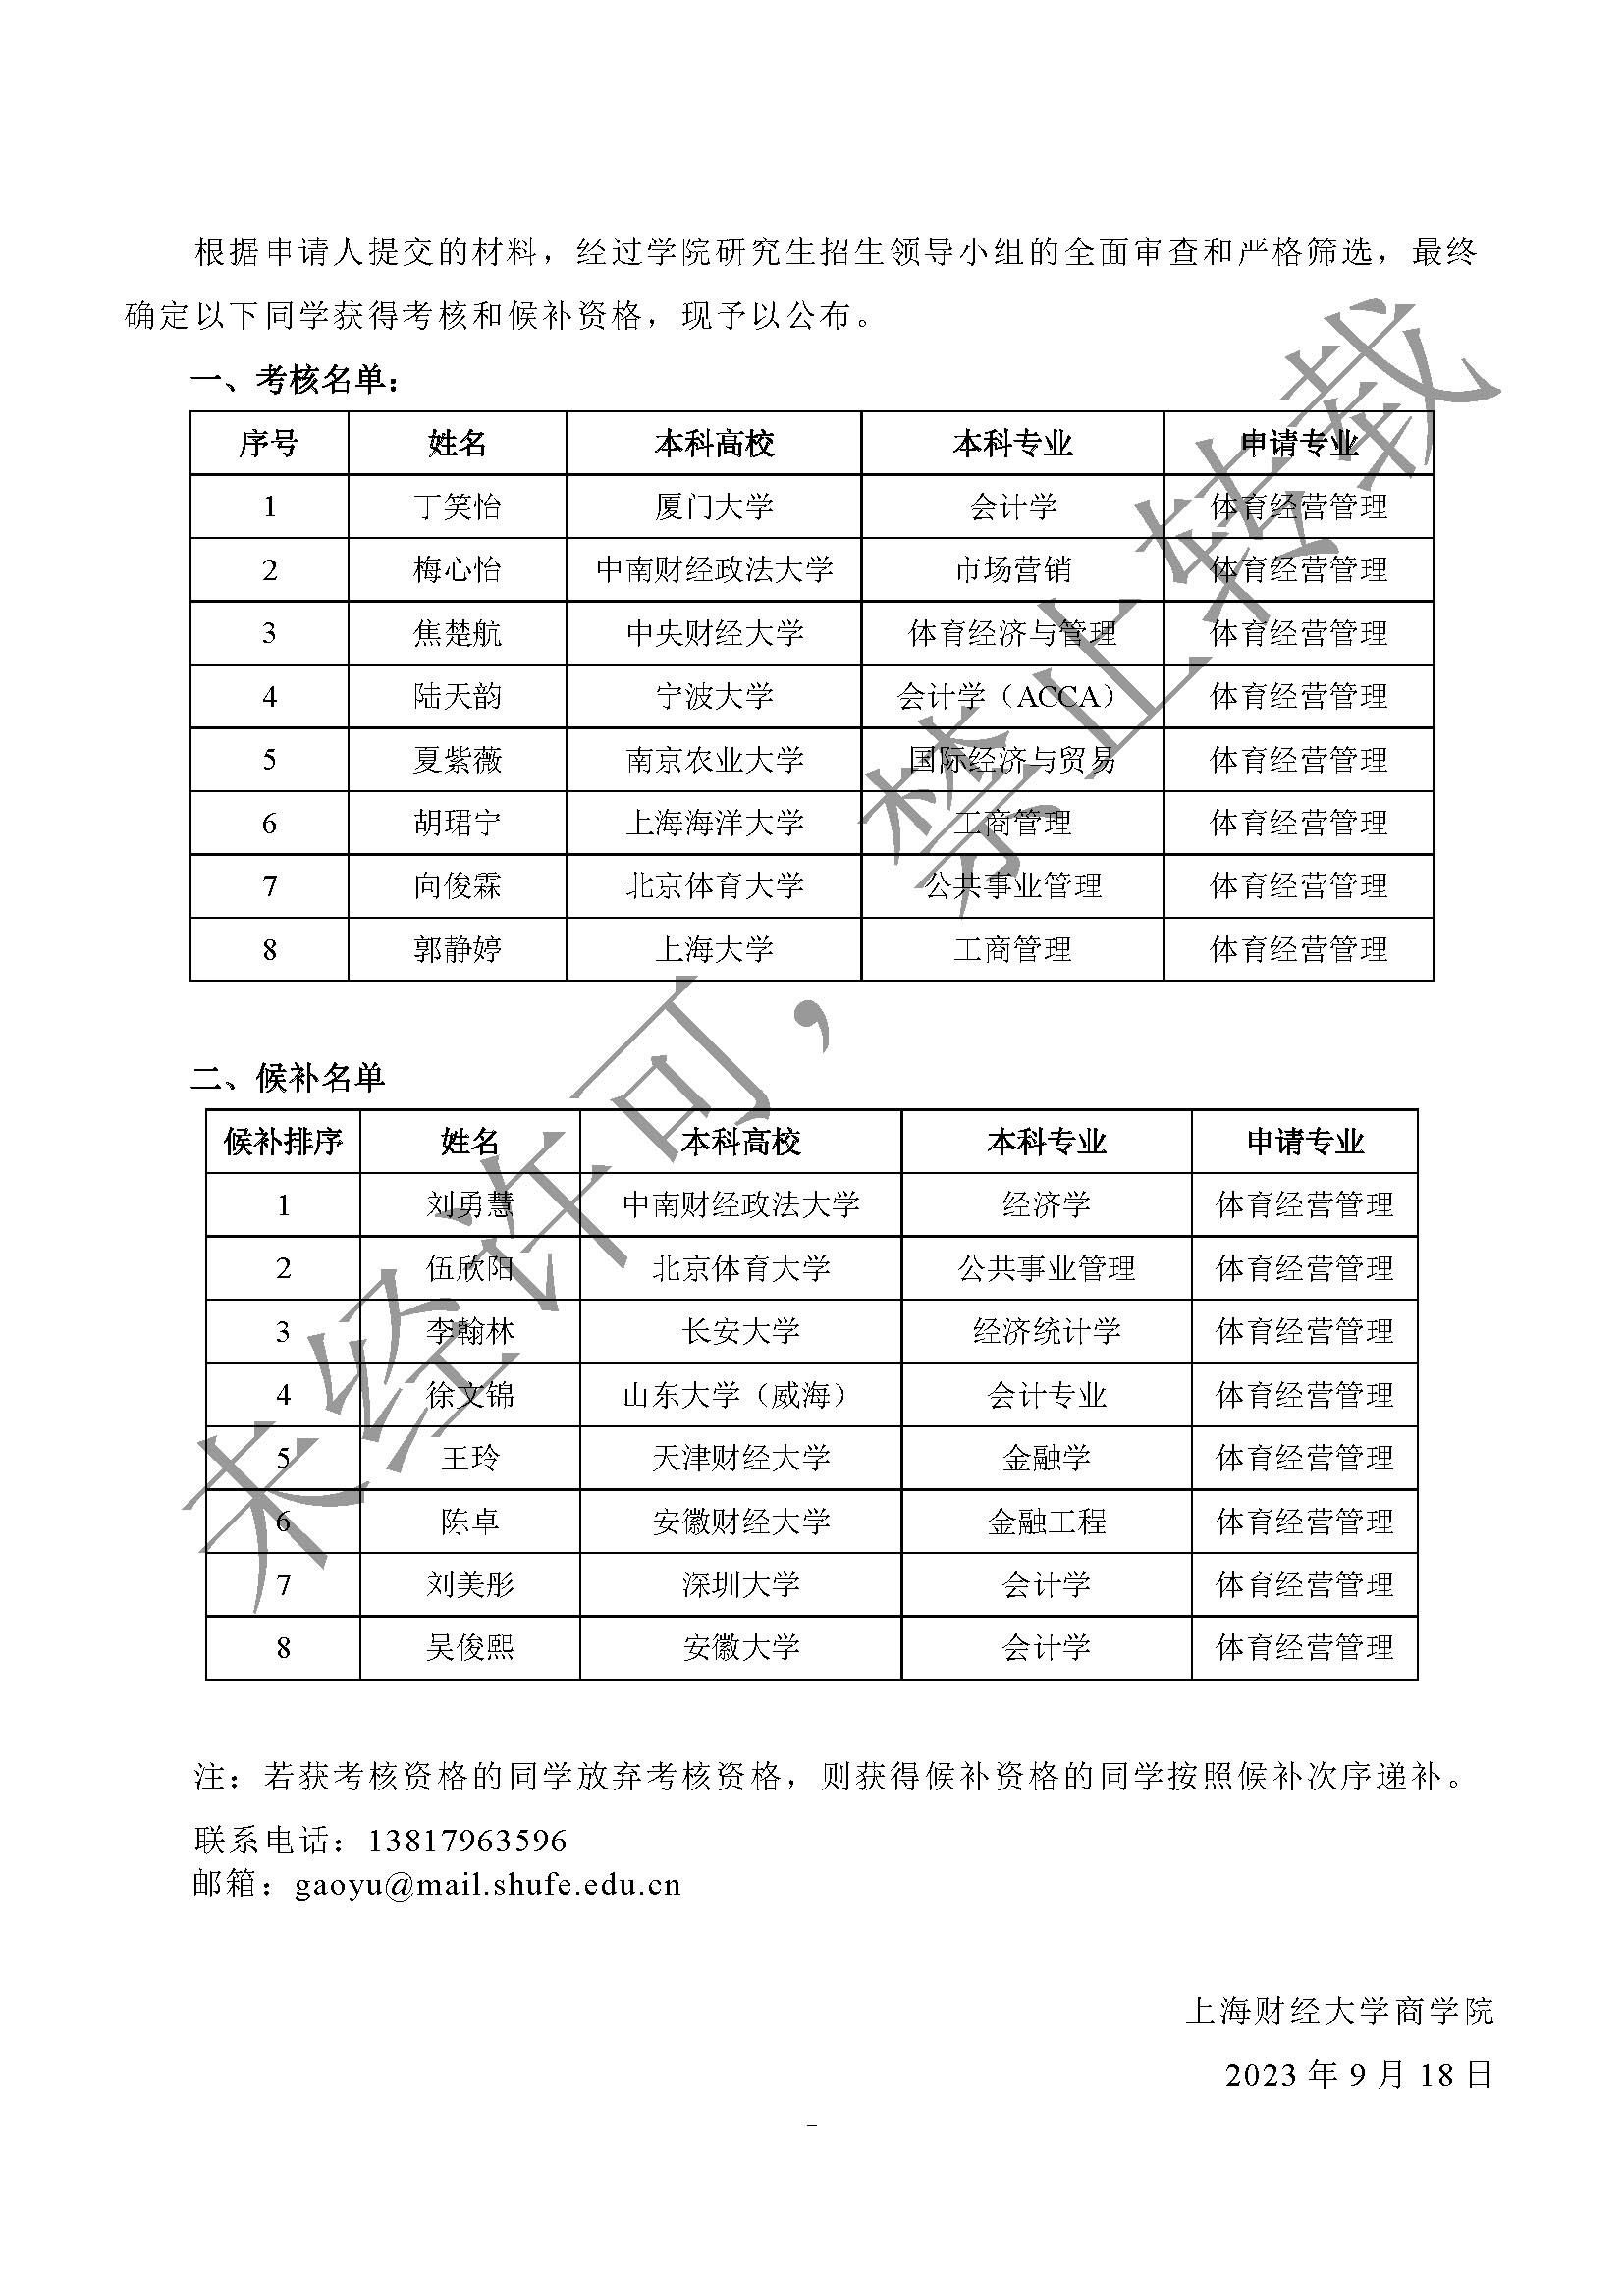 上海财经大学商学院体育经营管理专业2024年推荐免试预报名考核名单_页面_1.jpg